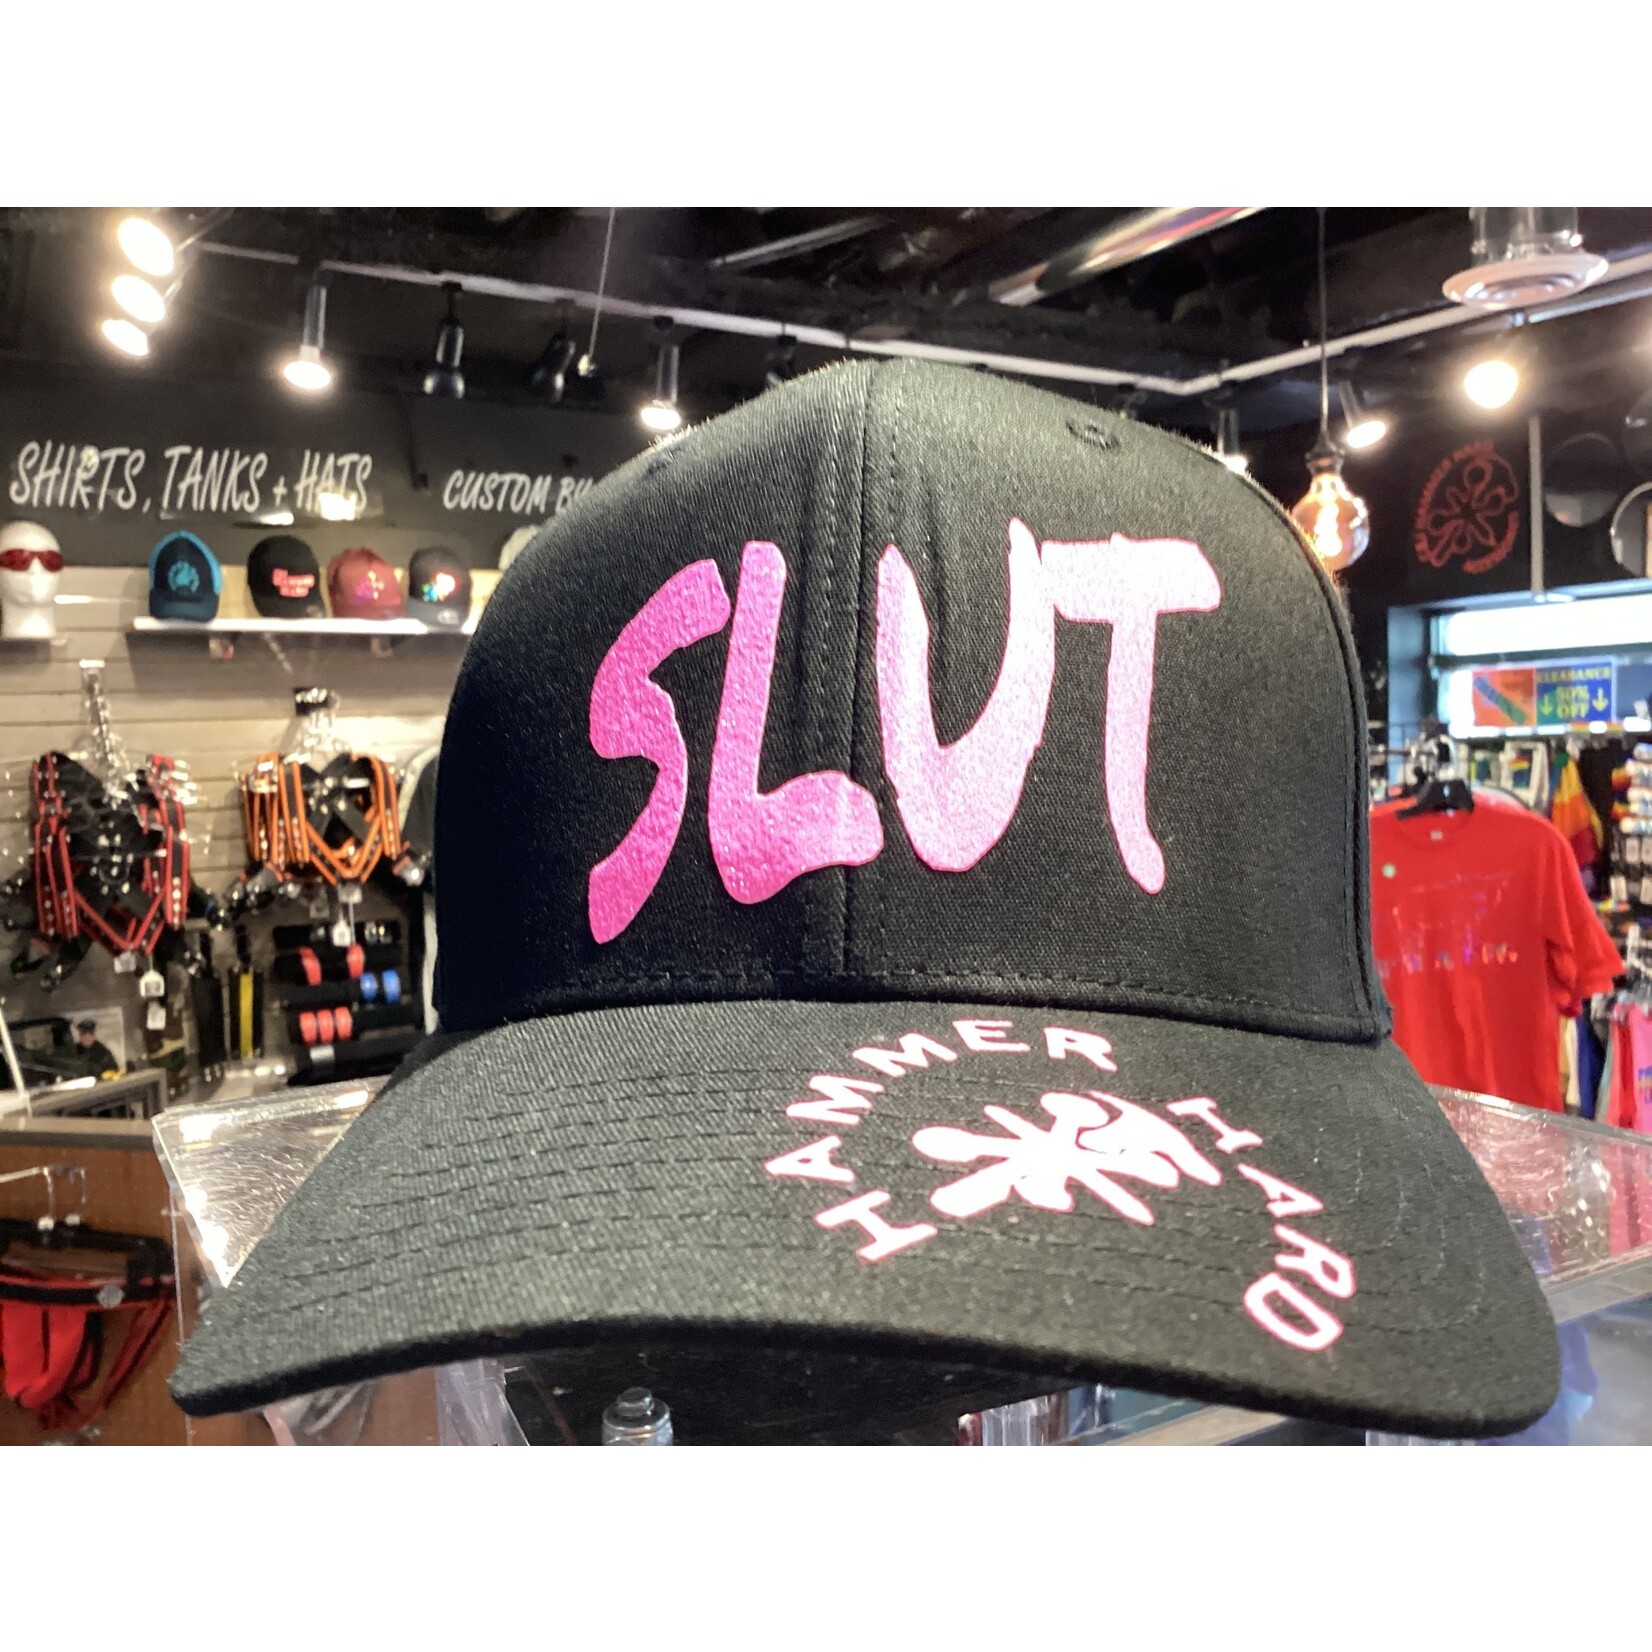 Jax Hammer Jax hammer made Slut hat black with  neon pink vinyl flex fit hat